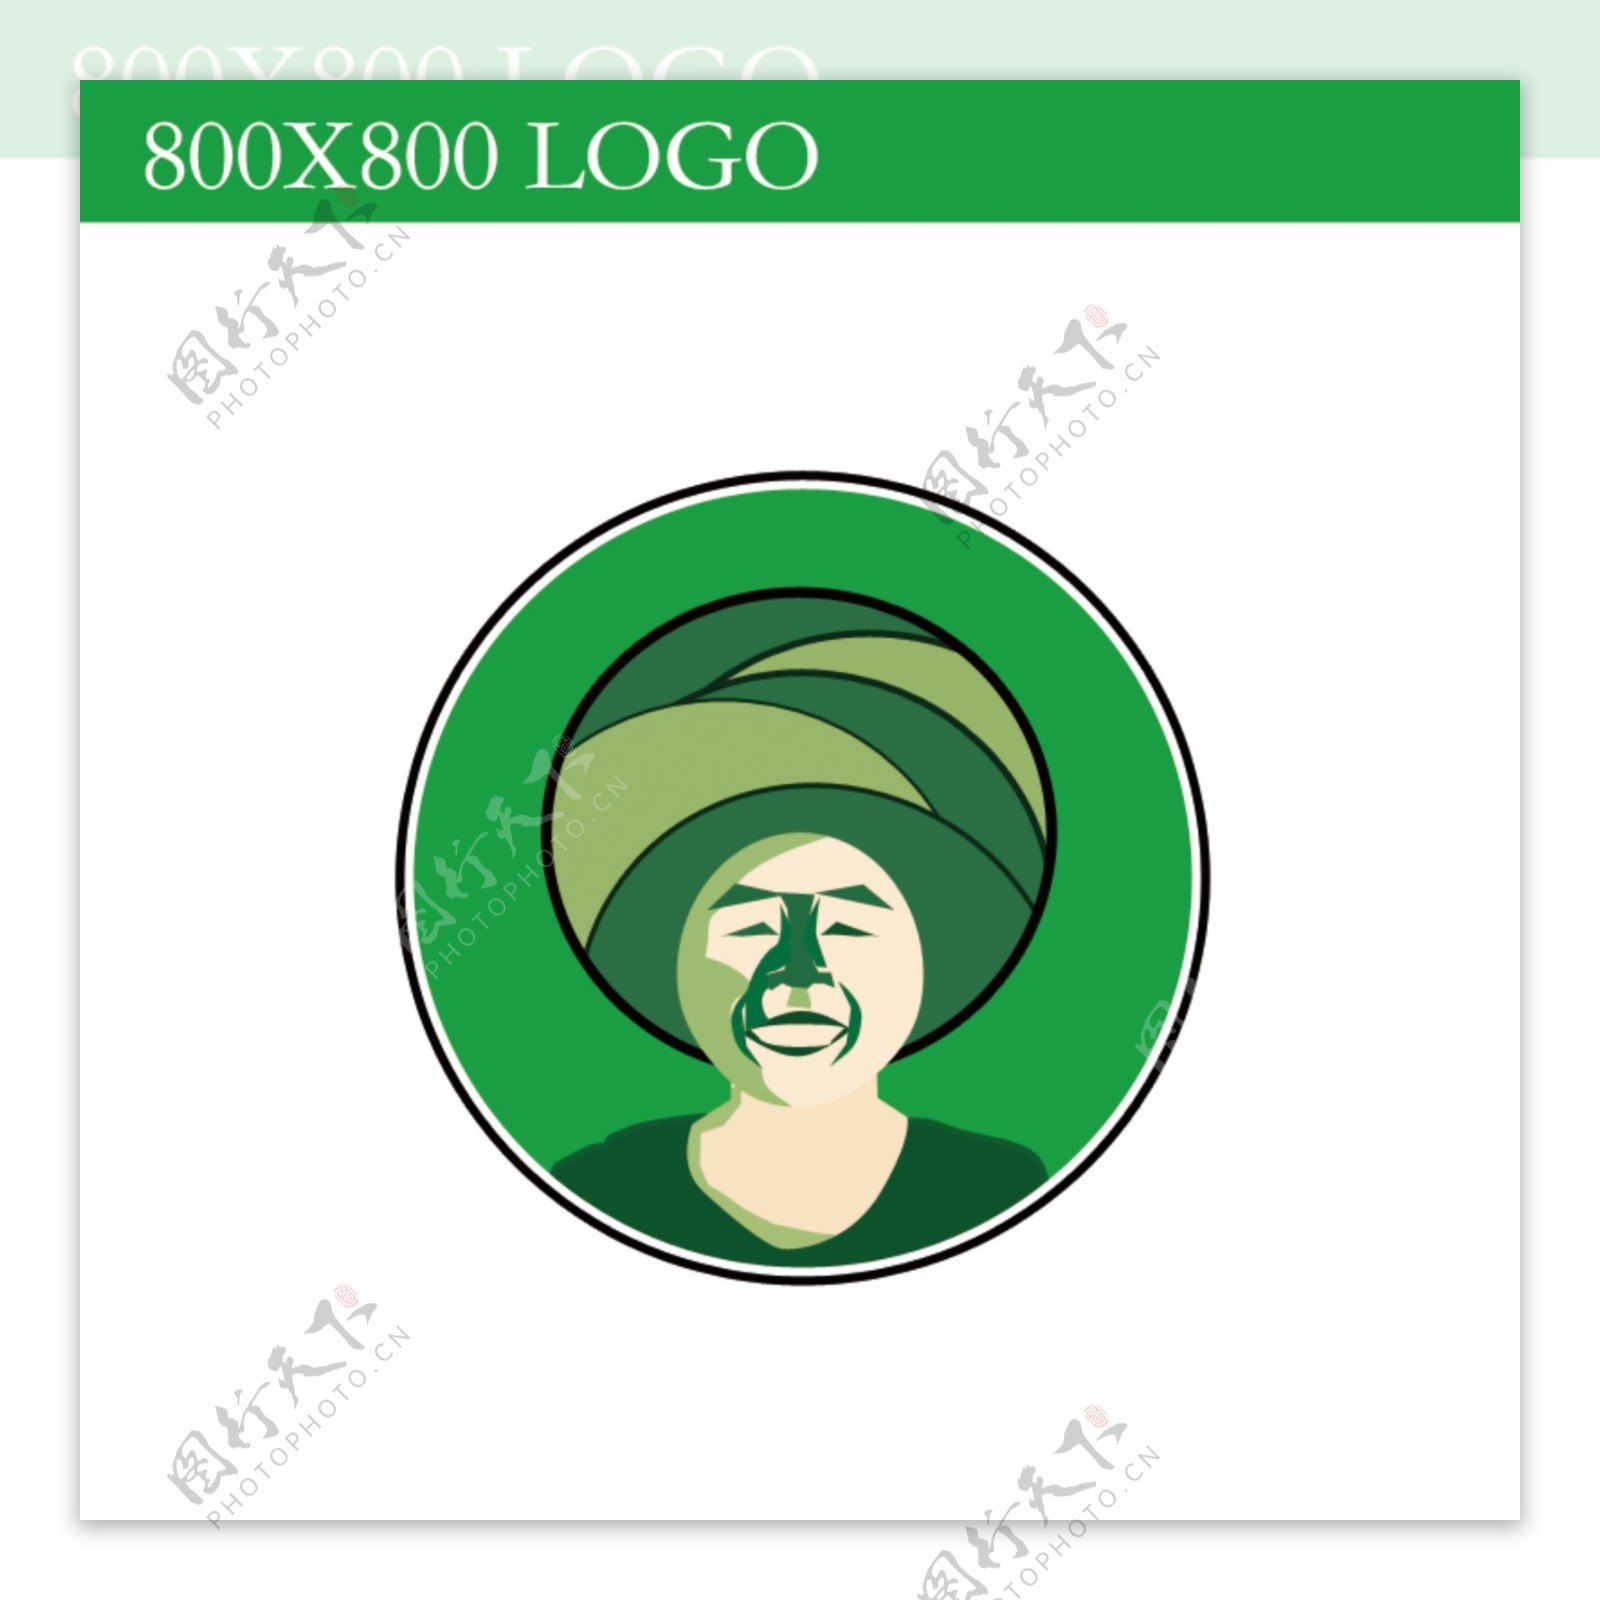 人物logo绿色